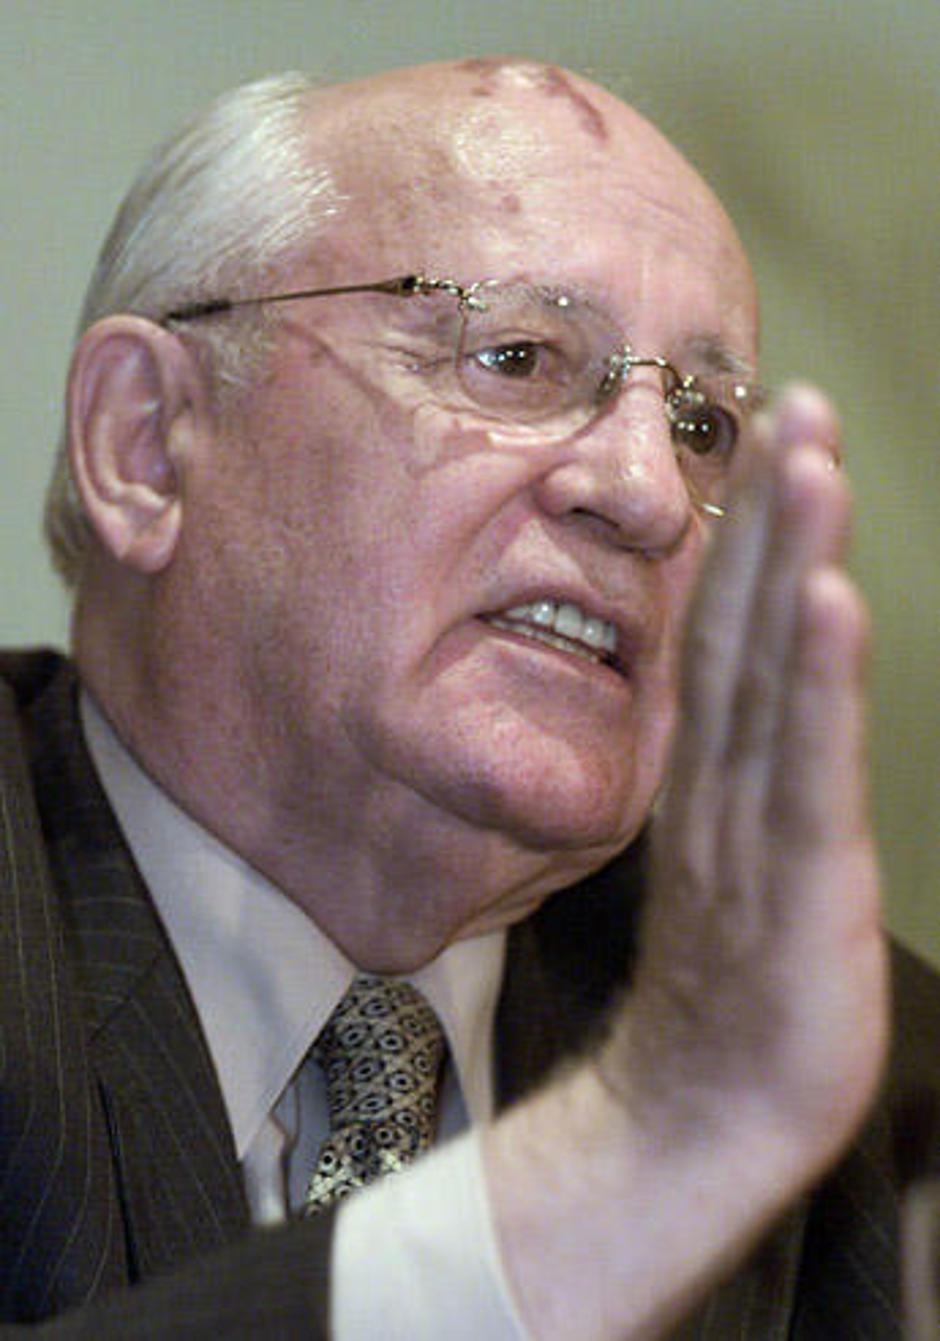 Zahodne države potrebujejo perestrojko, trdi Mihail Gorbačov. | Avtor: Žurnal24 main